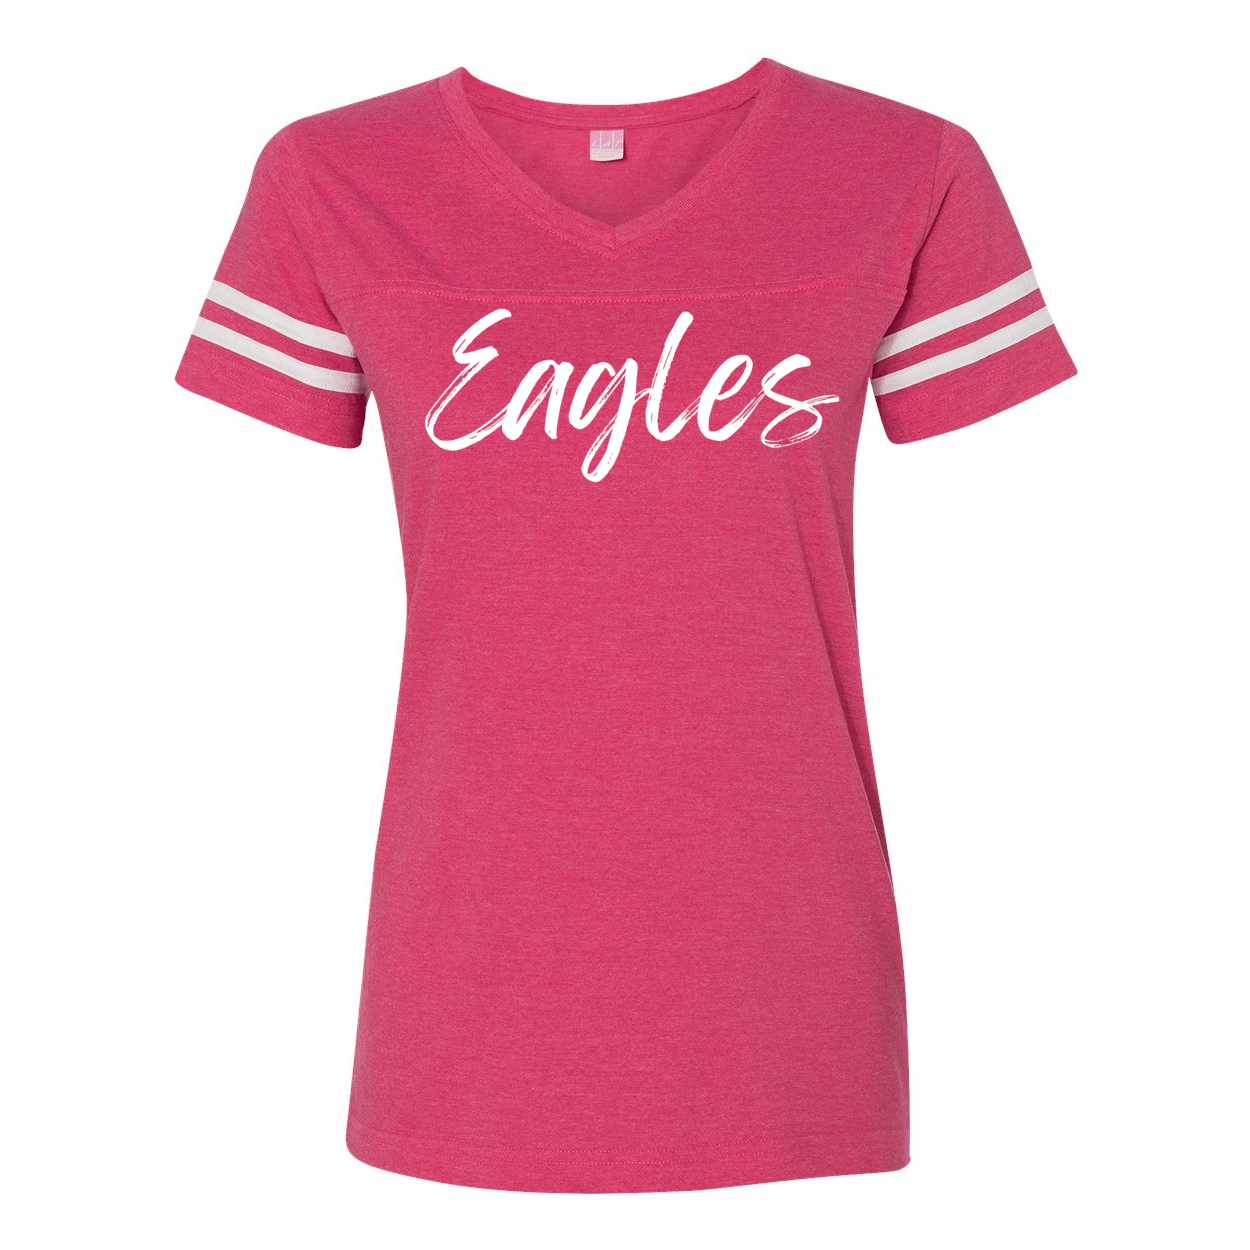 Women's Team Spirit Script Logo Short Sleeve Graphic Football Ringer Tee - New Albany Eagles